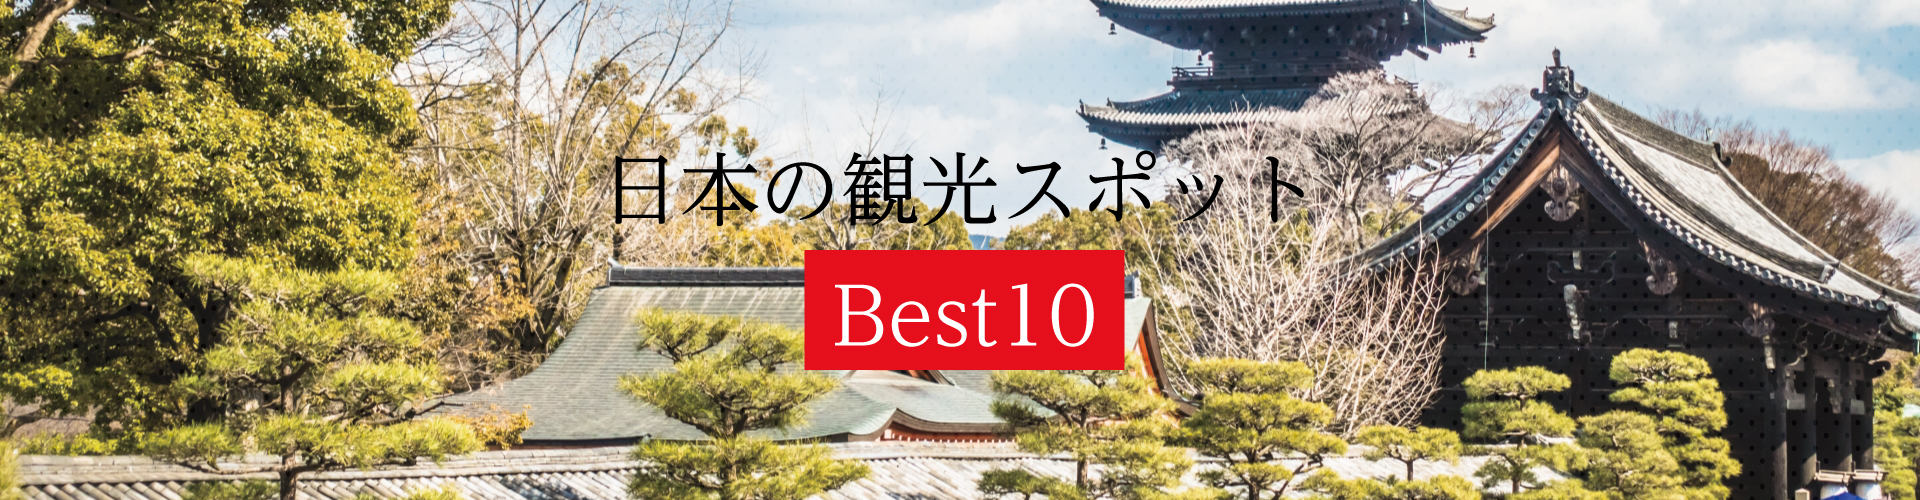 日本の観光スポット Best10